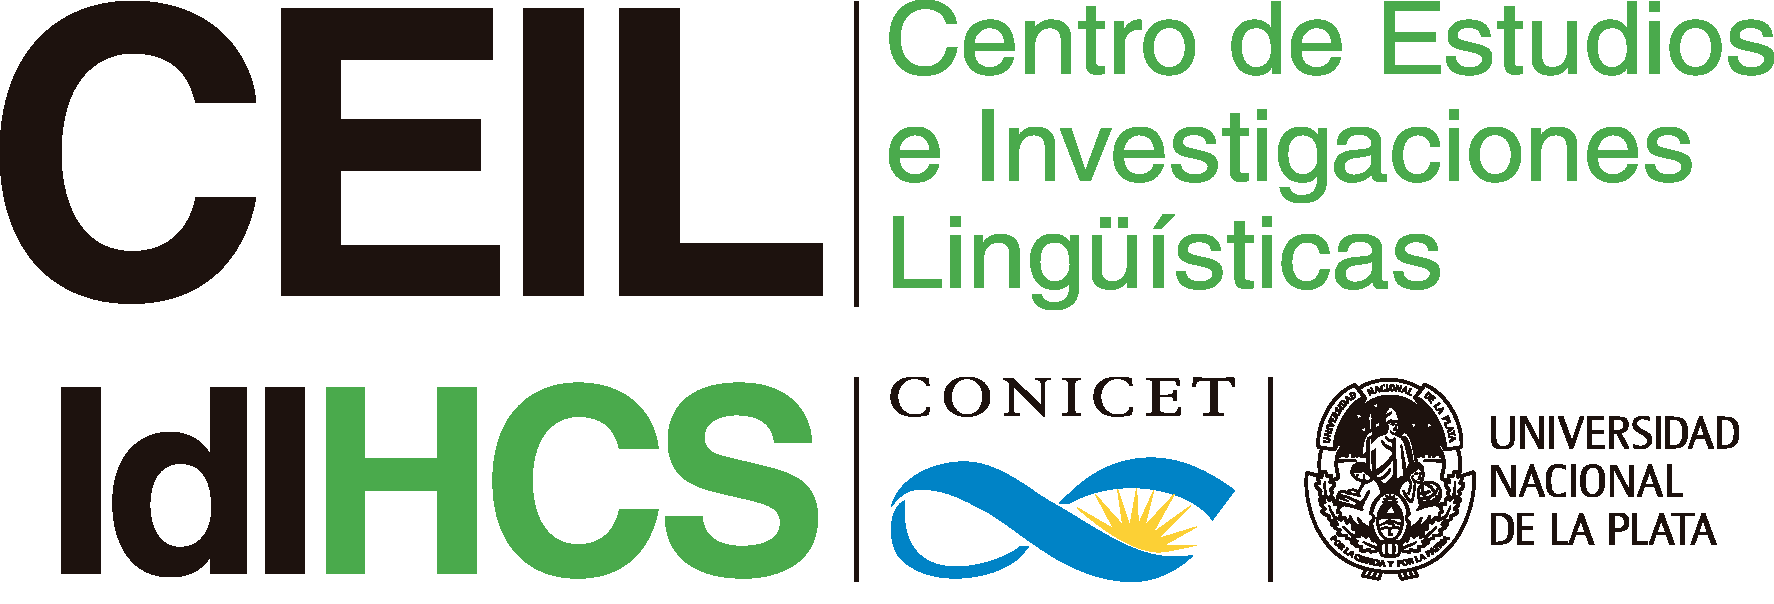 Centro de Estudios e Investigaciones Lingüísticas